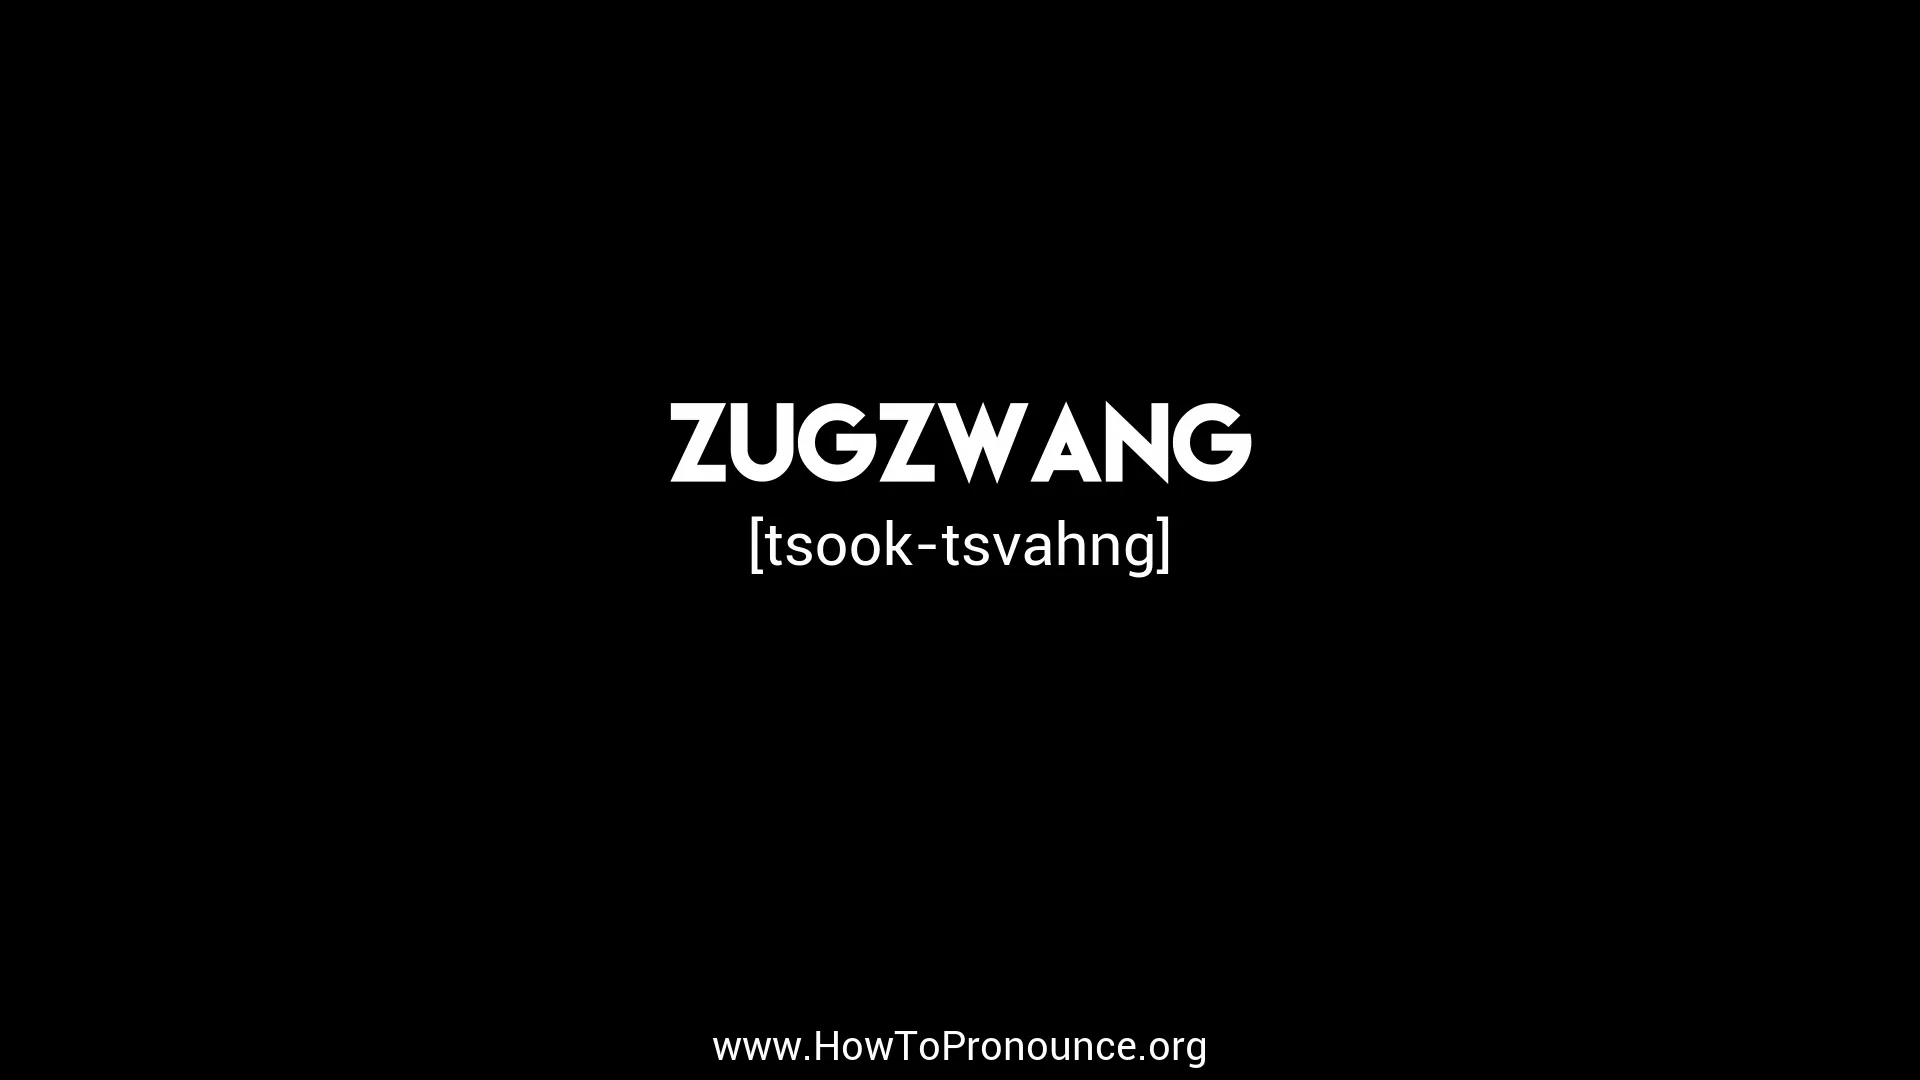 How to pronounce Zugzwang  English pronunciation 